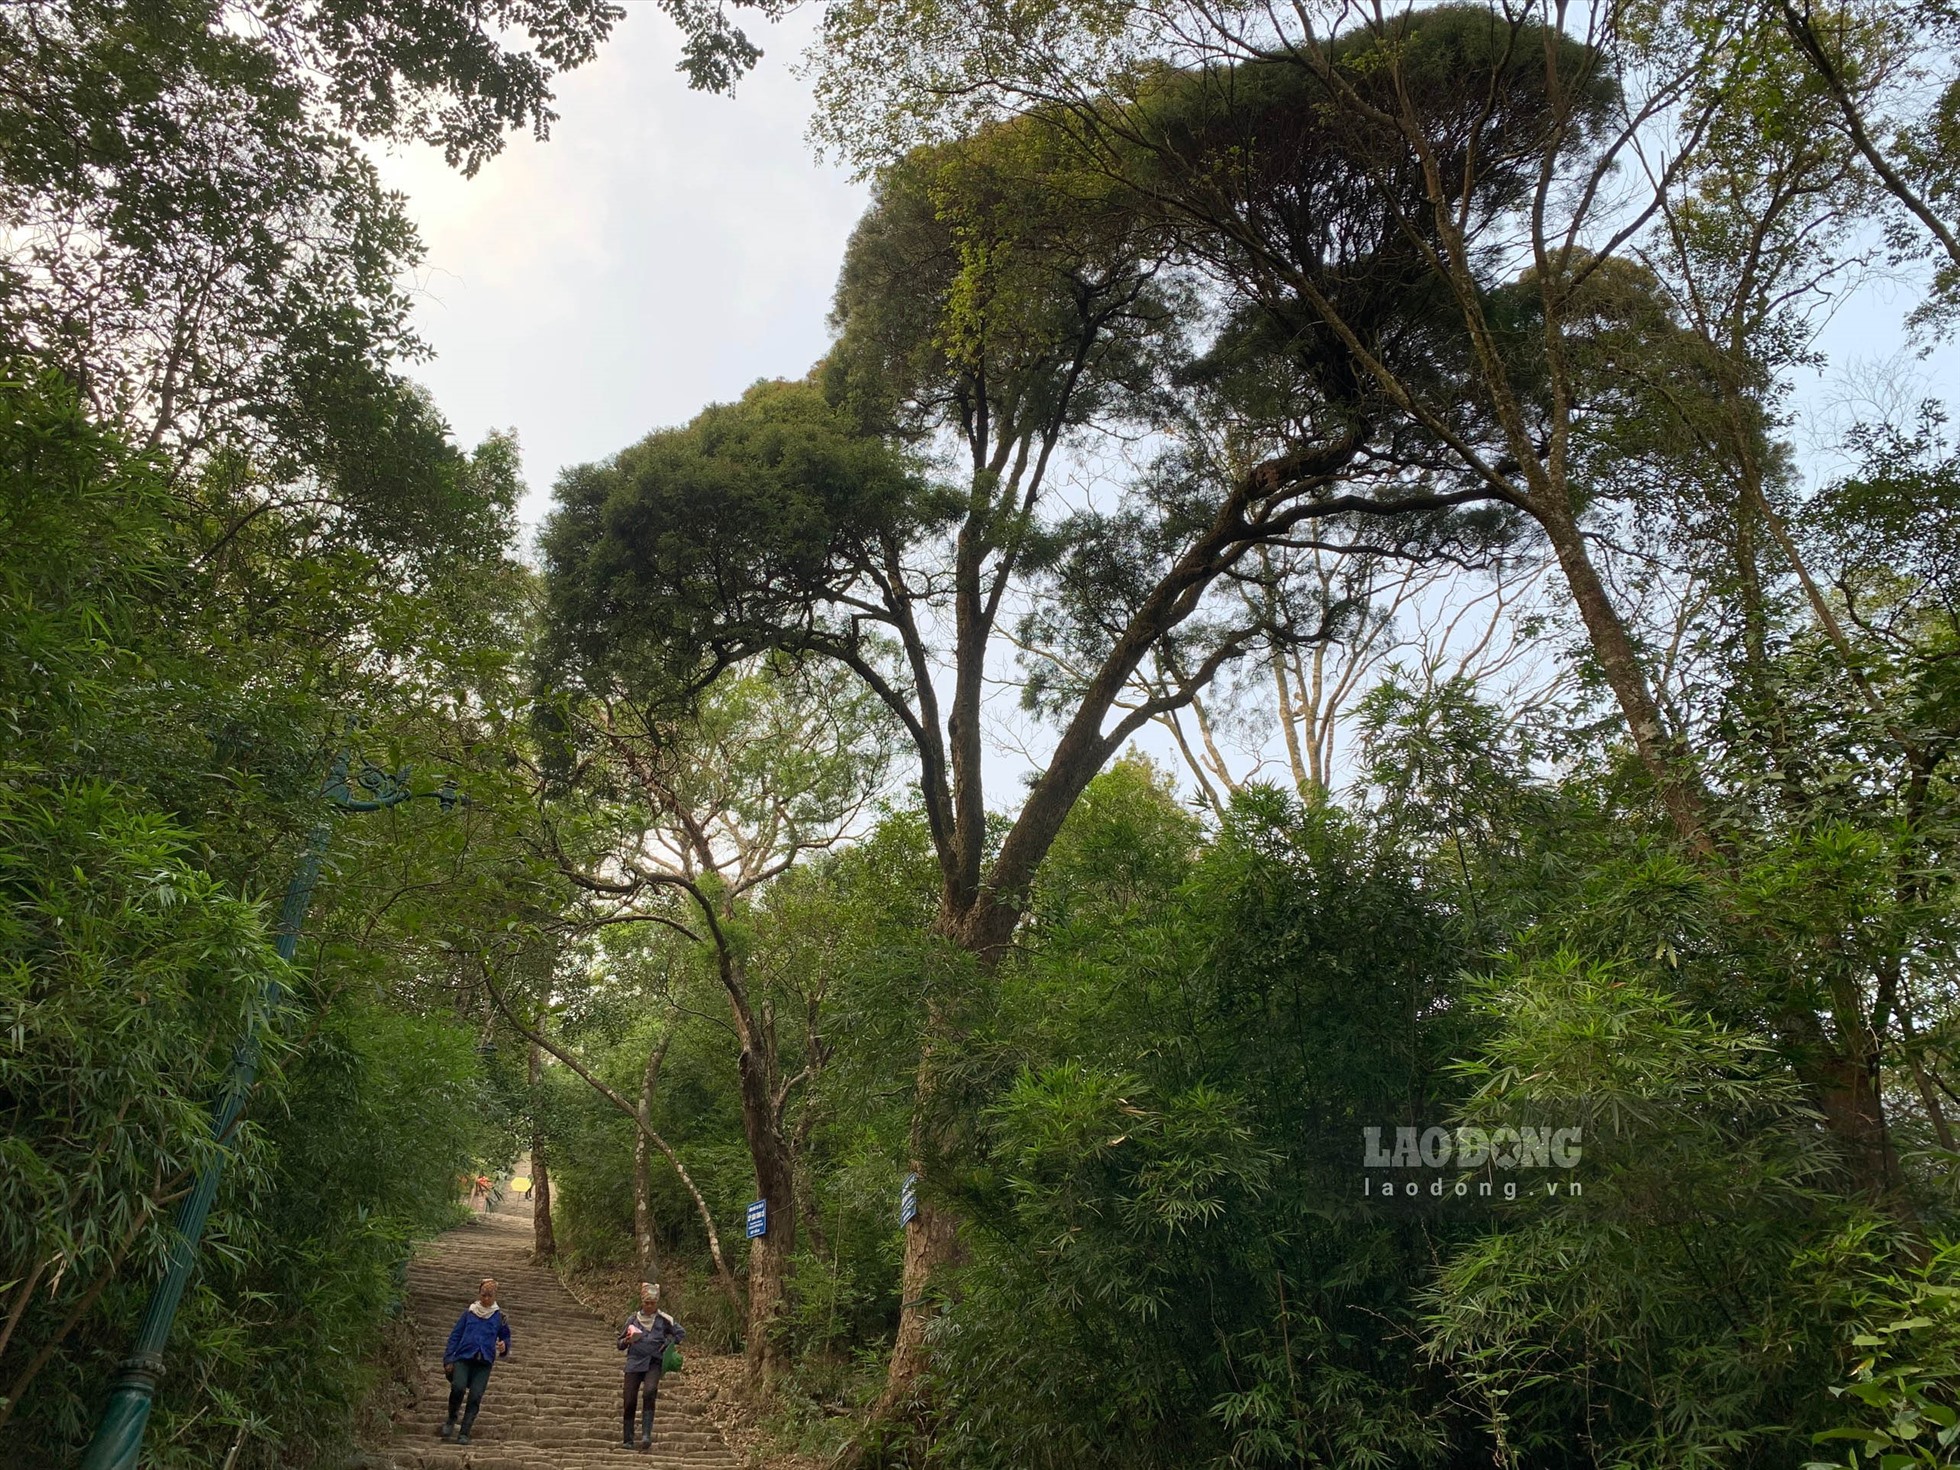 Vì muốn ngắm các “cụ xích tùng“, nhiều du khách chọn cách đi bộ lên đỉnh thiêng Yên Tử thay vì đi cáp treo.